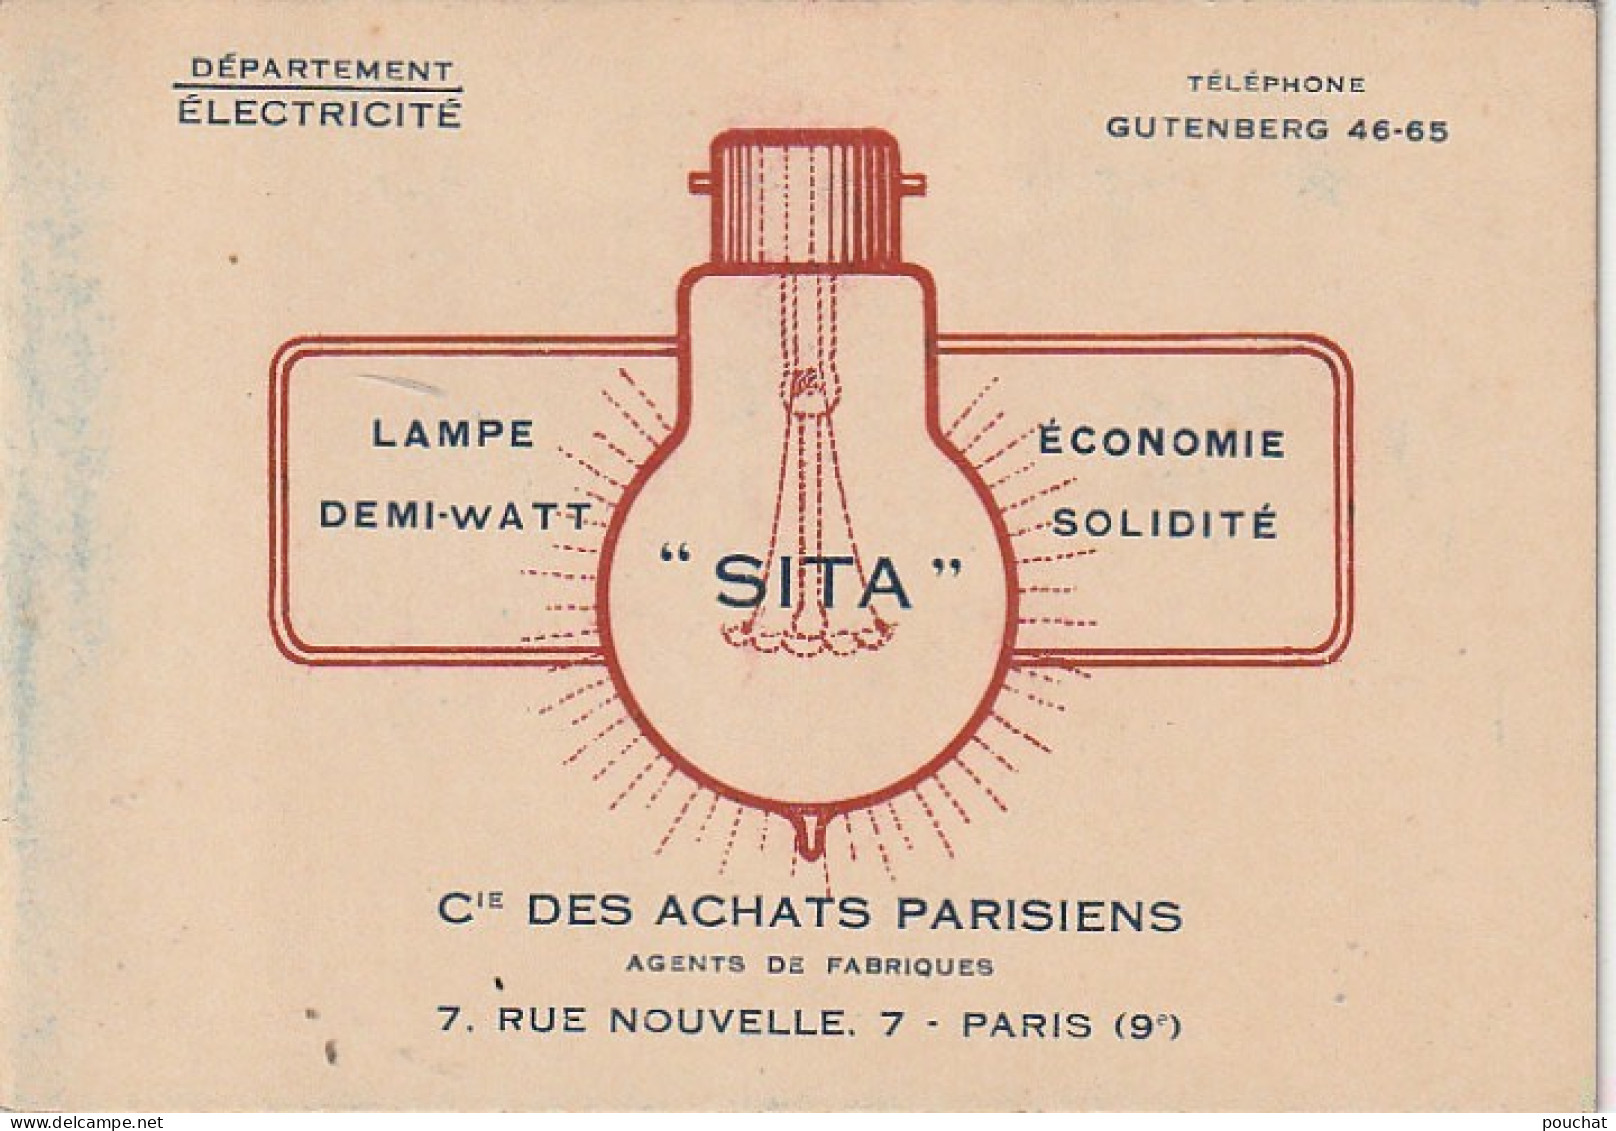 Z+ 25- (75) Cie DES ACHATS PARISIENS , DEPT ELECTRICITE , PARIS 9e - LAMPES FILAMENTS METALLIQUES - TARIFS - Elektriciteit En Gas